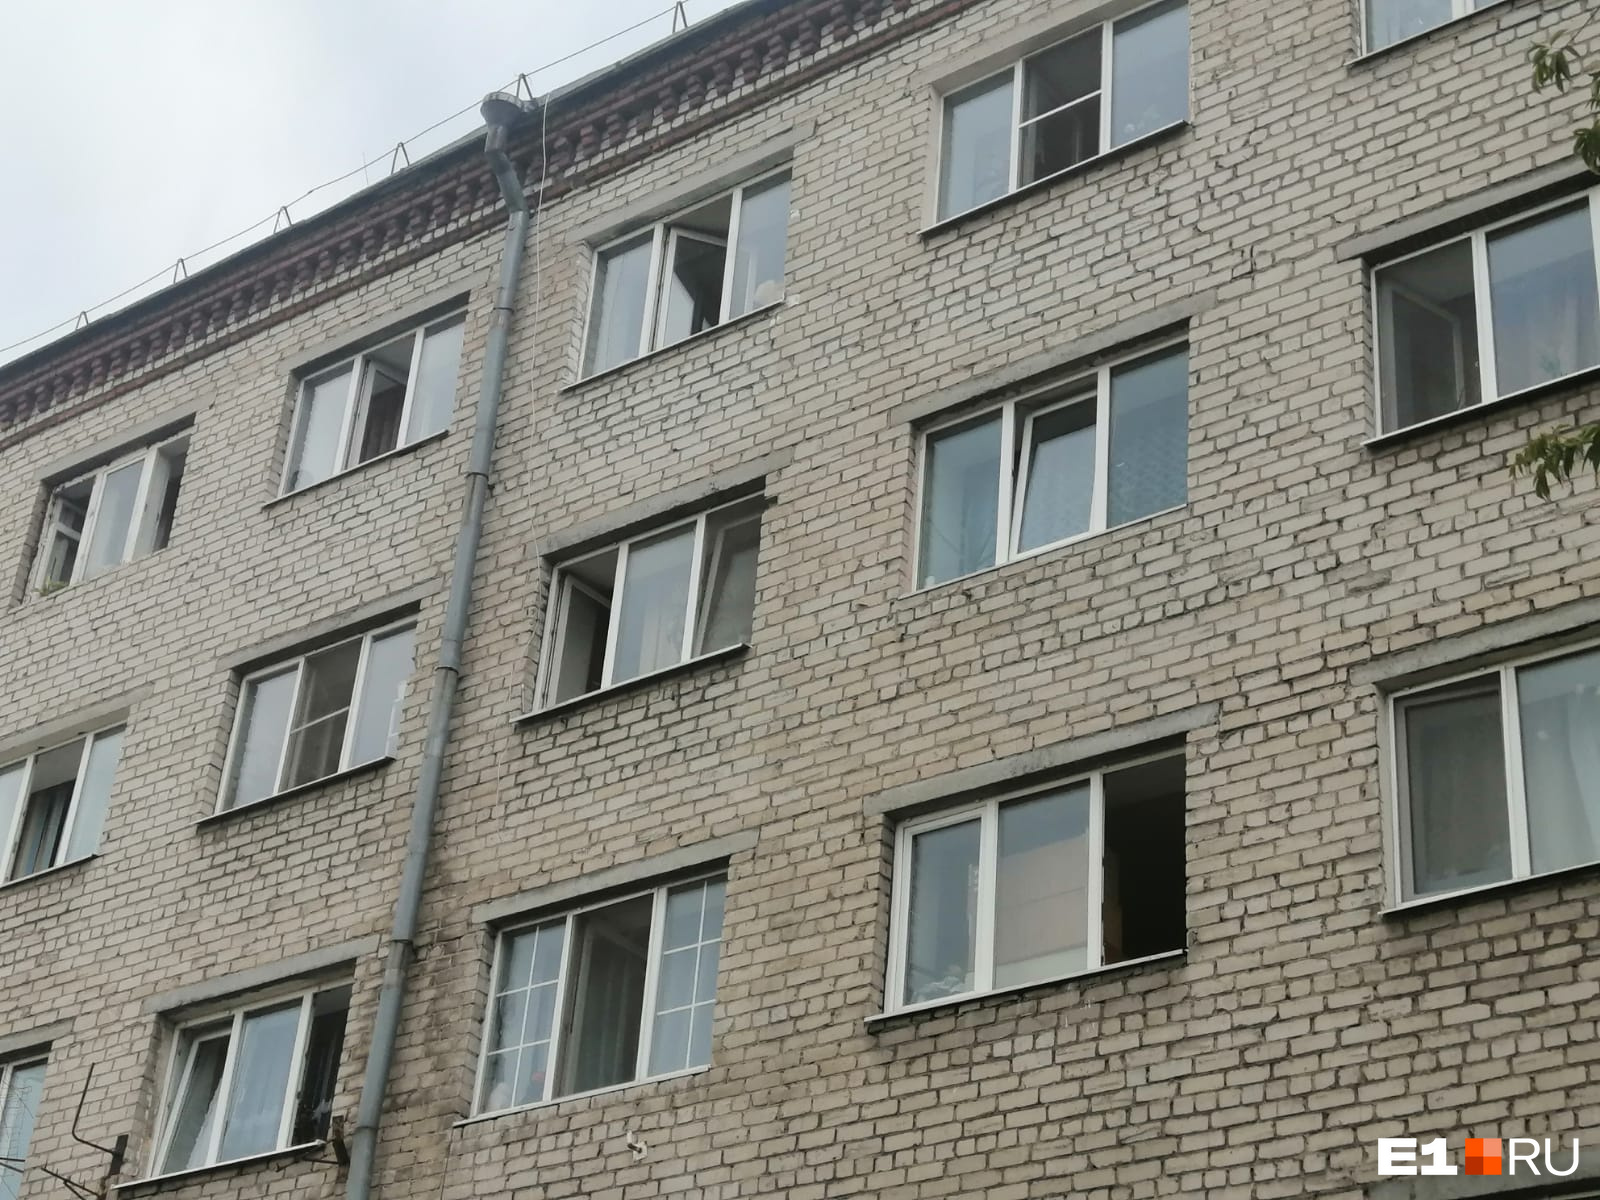 В Екатеринбурге годовалый ребенок выпал из окна на пятом этаже. Соседи говорят, что его выбросили